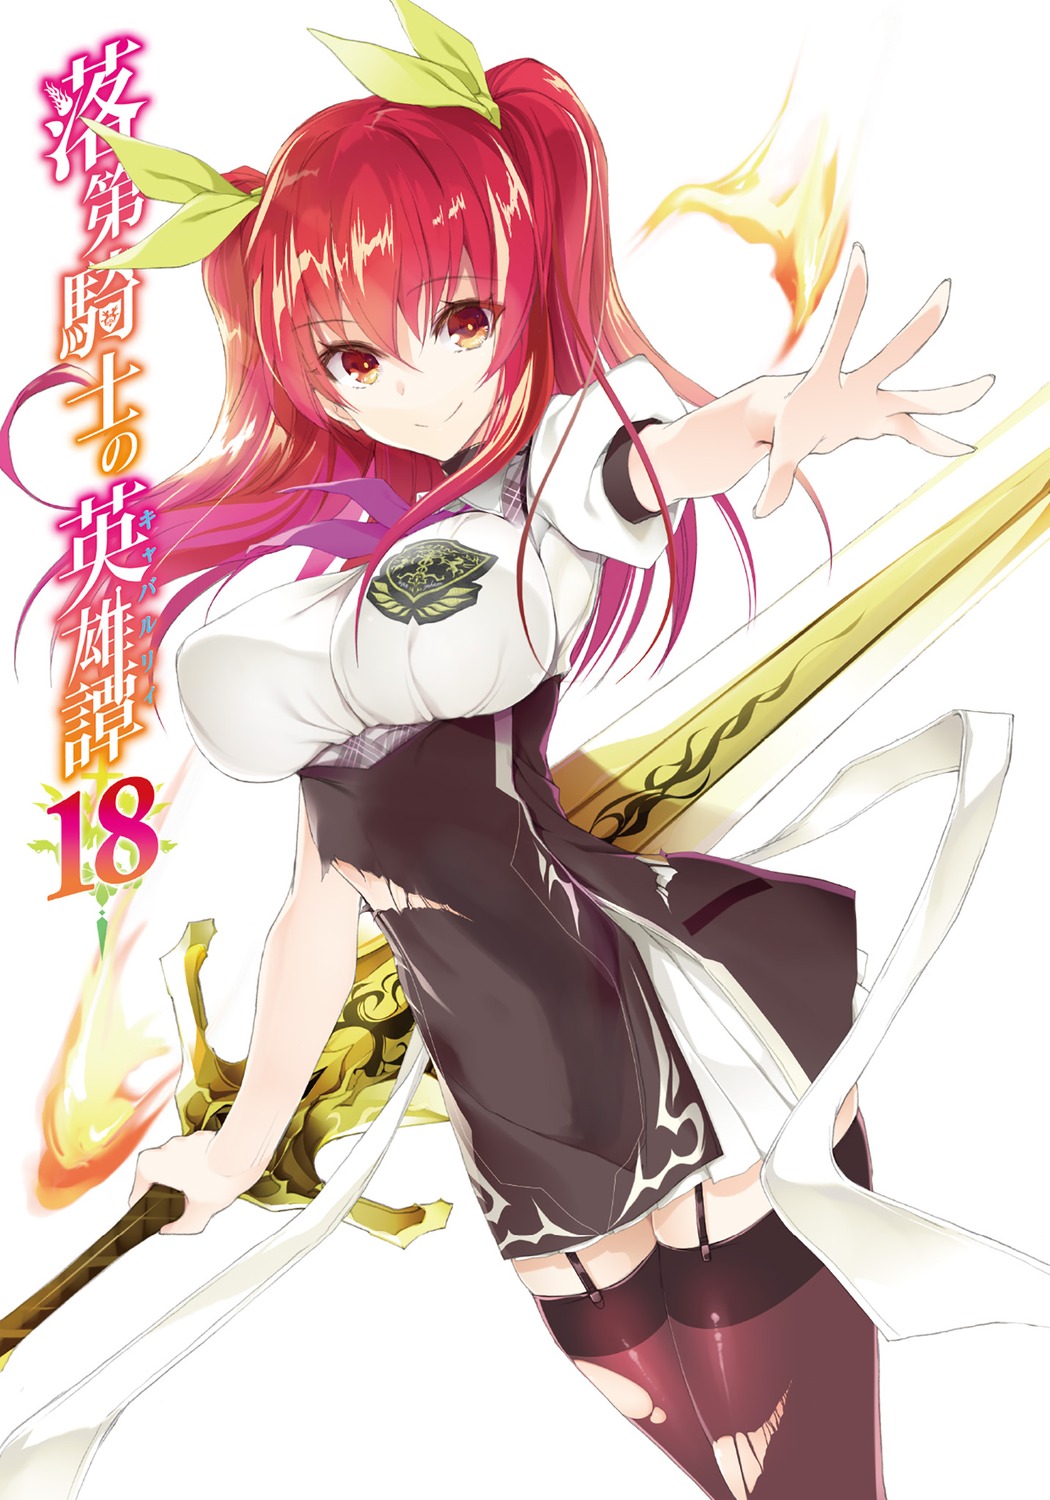 Light Novel de Rakudai Kishi entra no Último Arco